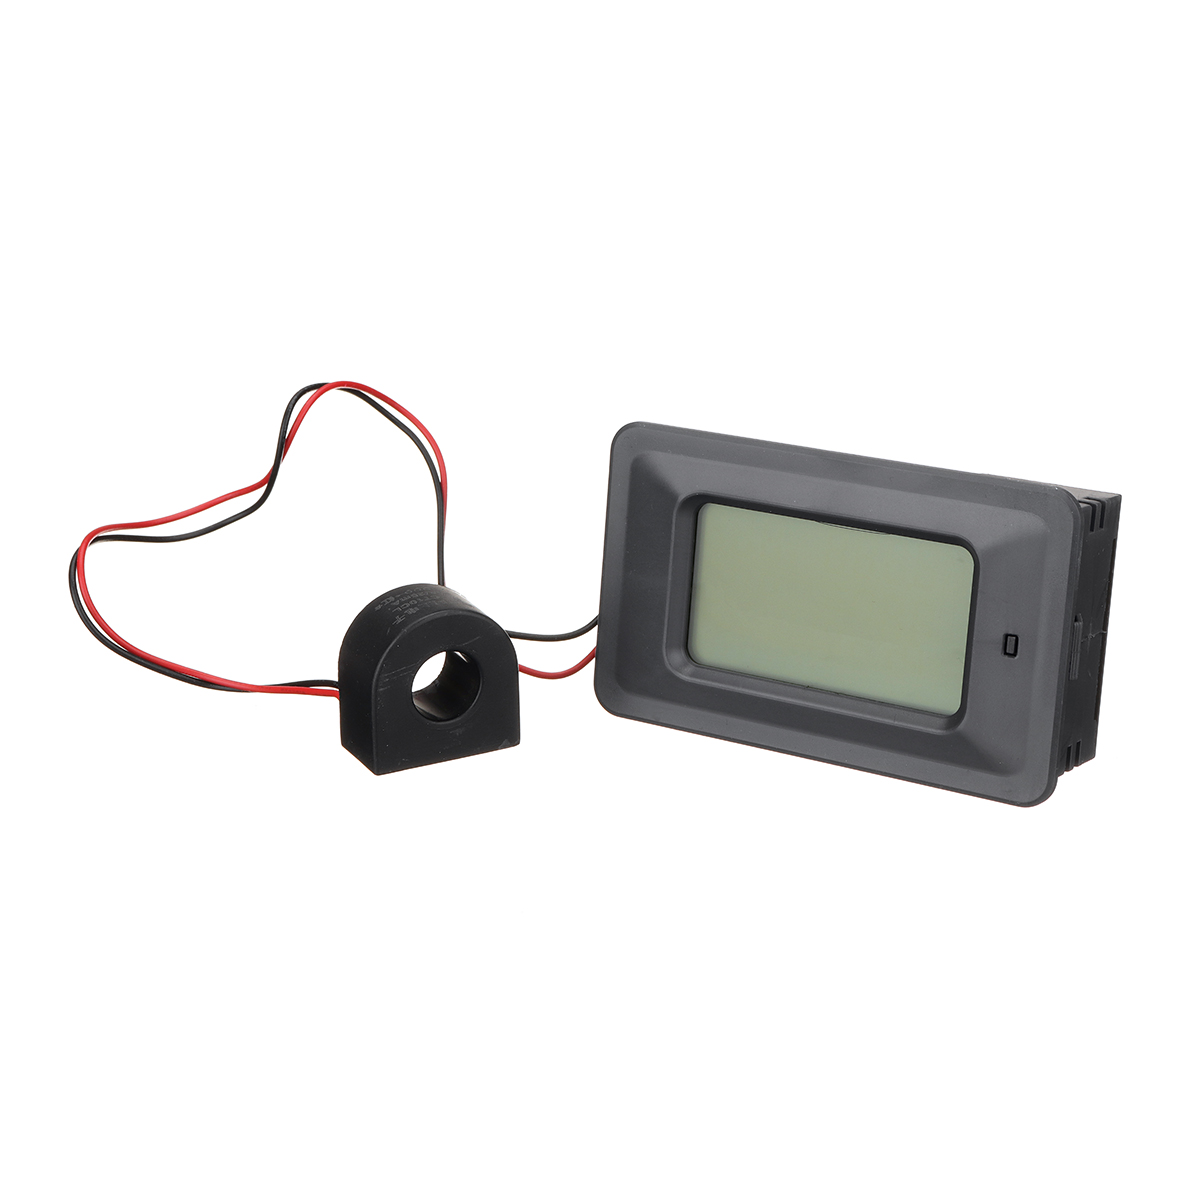 100A-Digital-LED-Panel-Power-Monitor-Power-Energy-Voltmeter-Ammeter-Meter-Tester-1262884-4